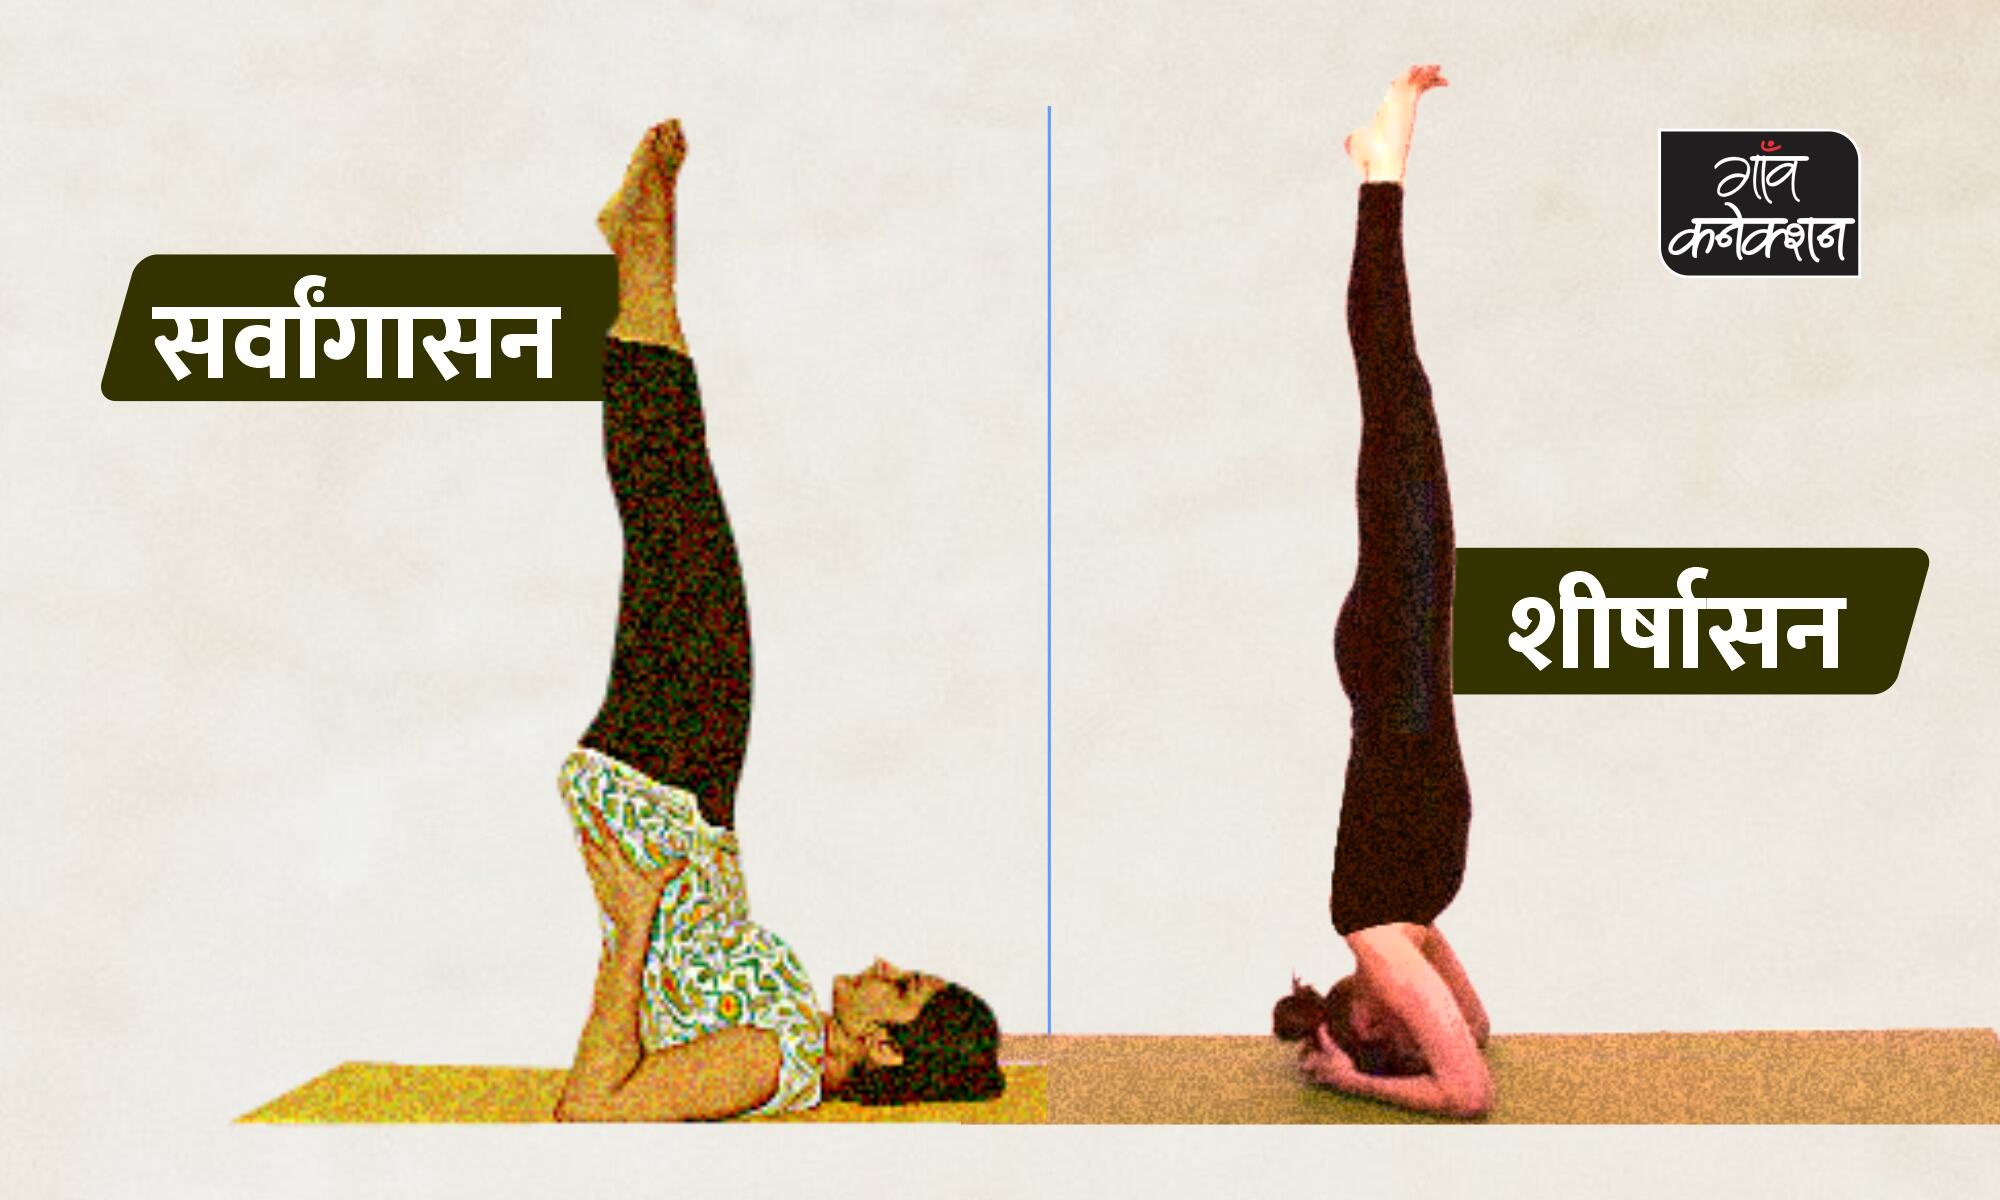 विपरीत करनी योग करने का सही तरीका, फायदे और सावधानियां | How To Do Viparita  Karani or Legs Up the Wall pose Step by Step Instructions In Hindi